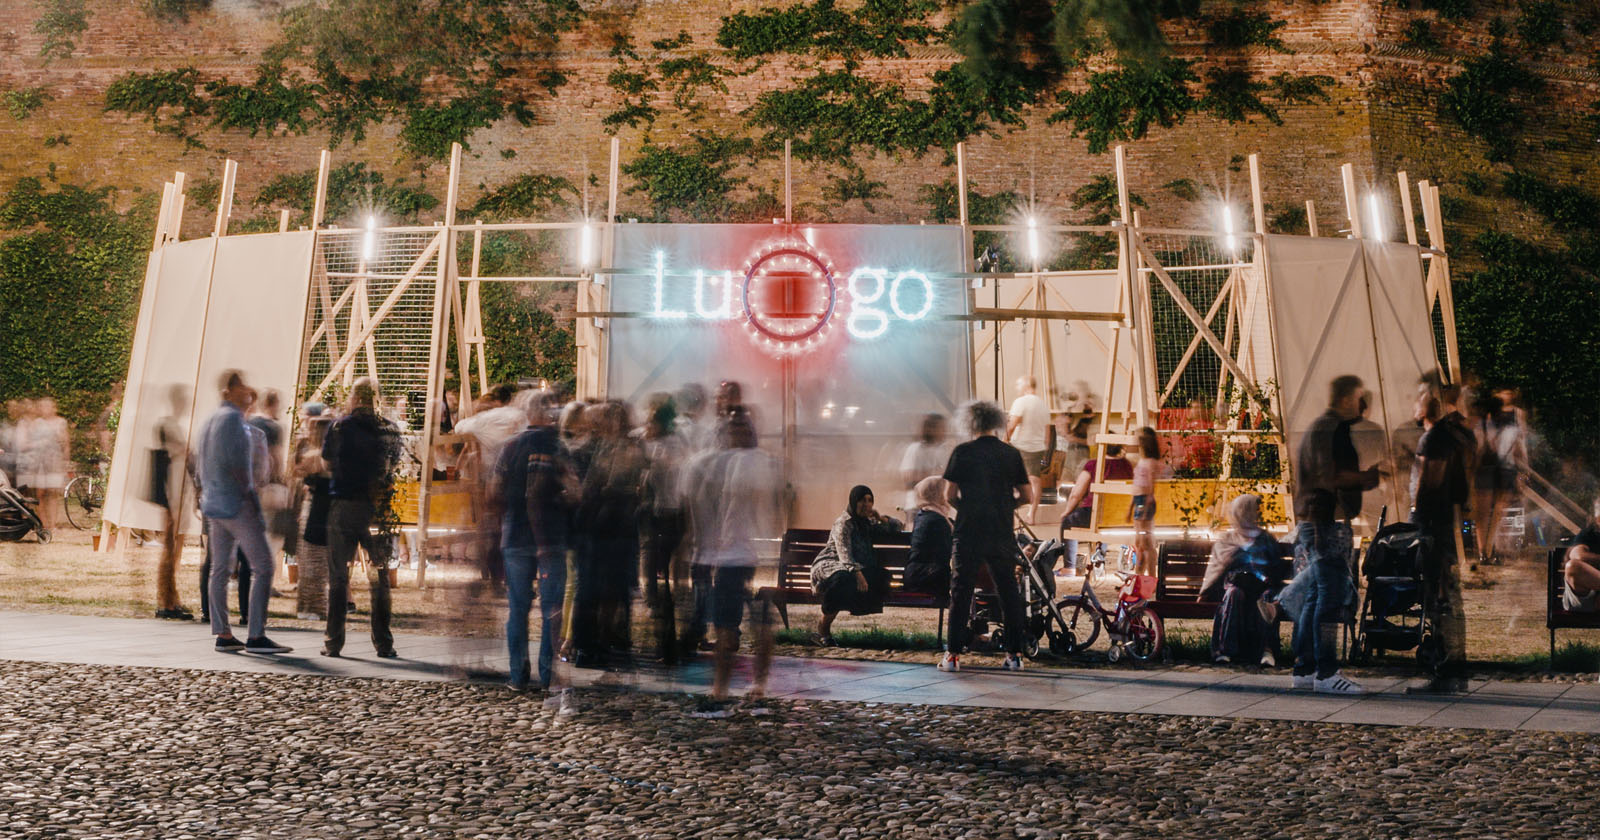 LuOgo | inaugurata l'installazione del collettivo Orizzontale per la città di Lugo